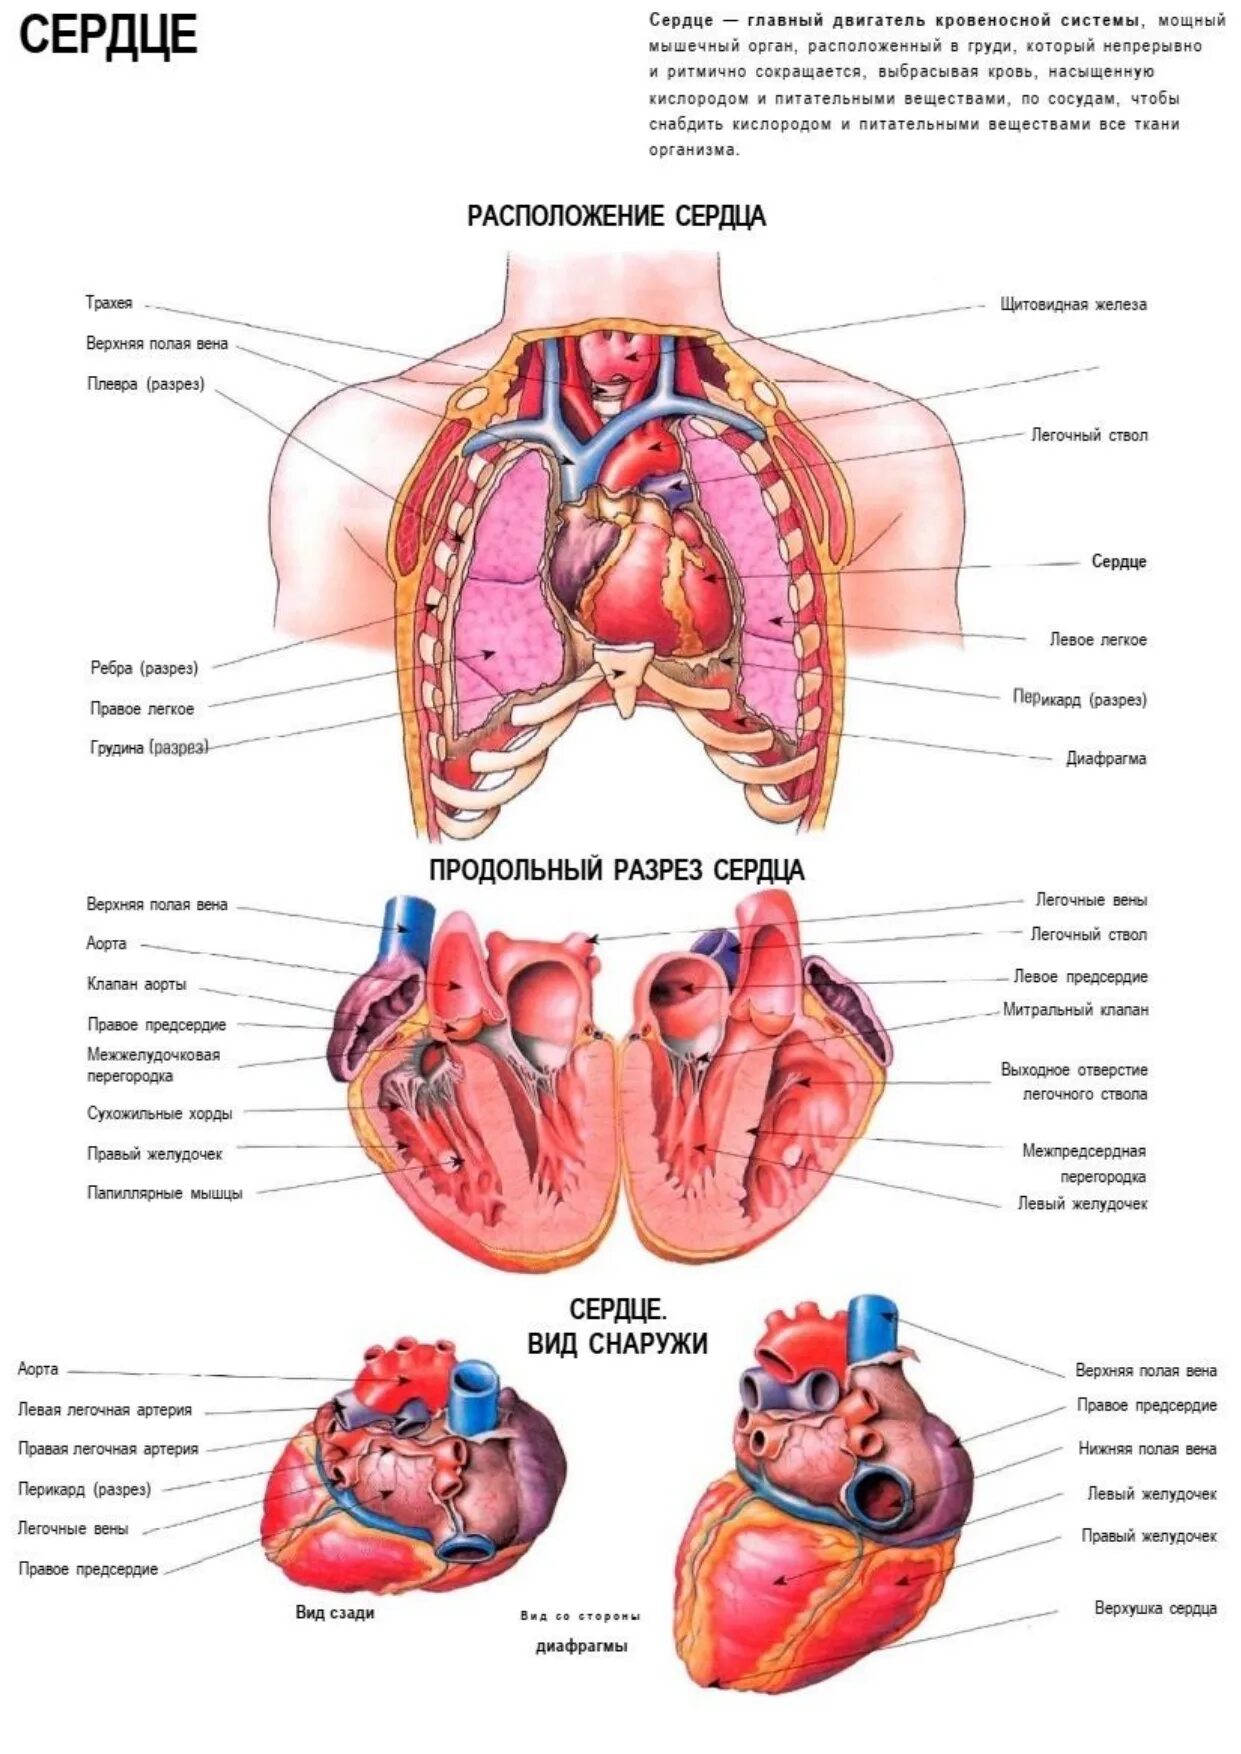 Сердце снизу. Строение сердца анатомия атлас. Анатомия человека атлас органы. Анатомия сердца человека атлас. Строение внутренних органов человека атлас анатомия.